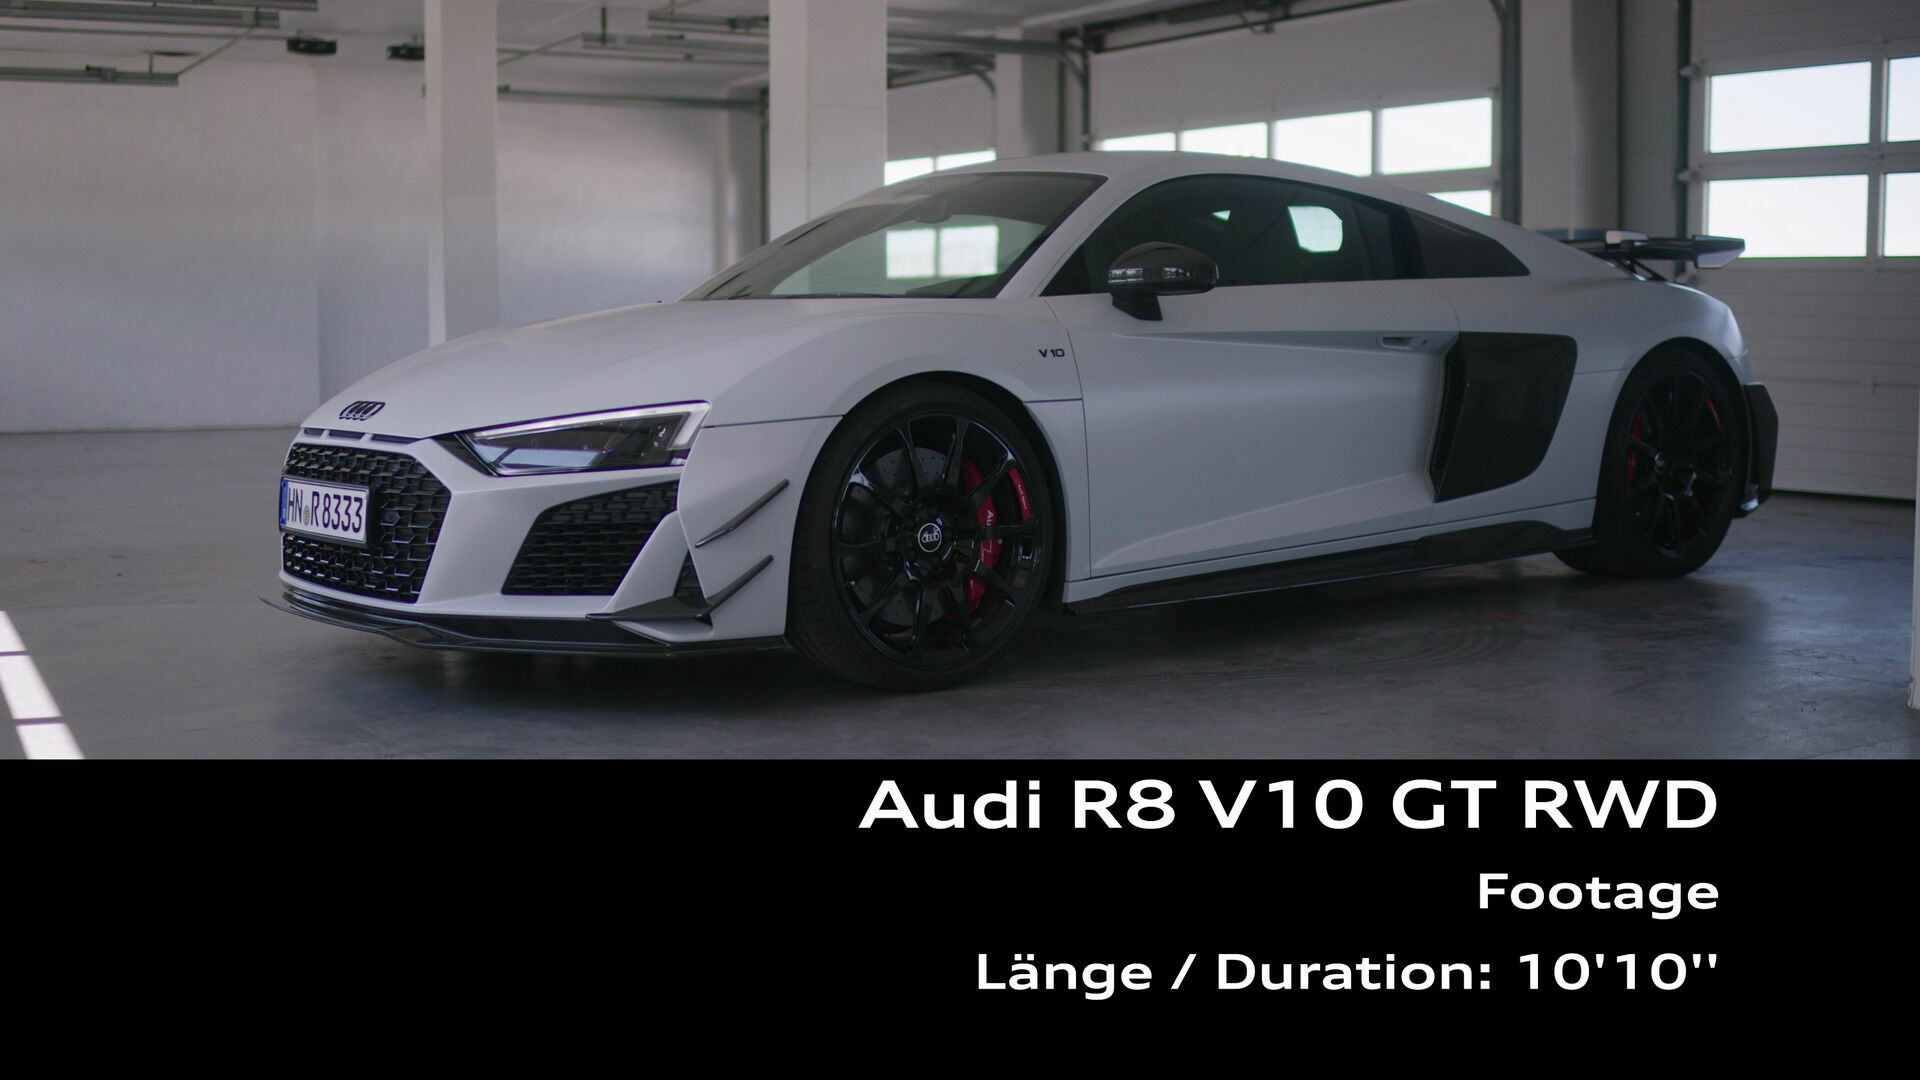 Footage: Audi R8 V10 GT RWD